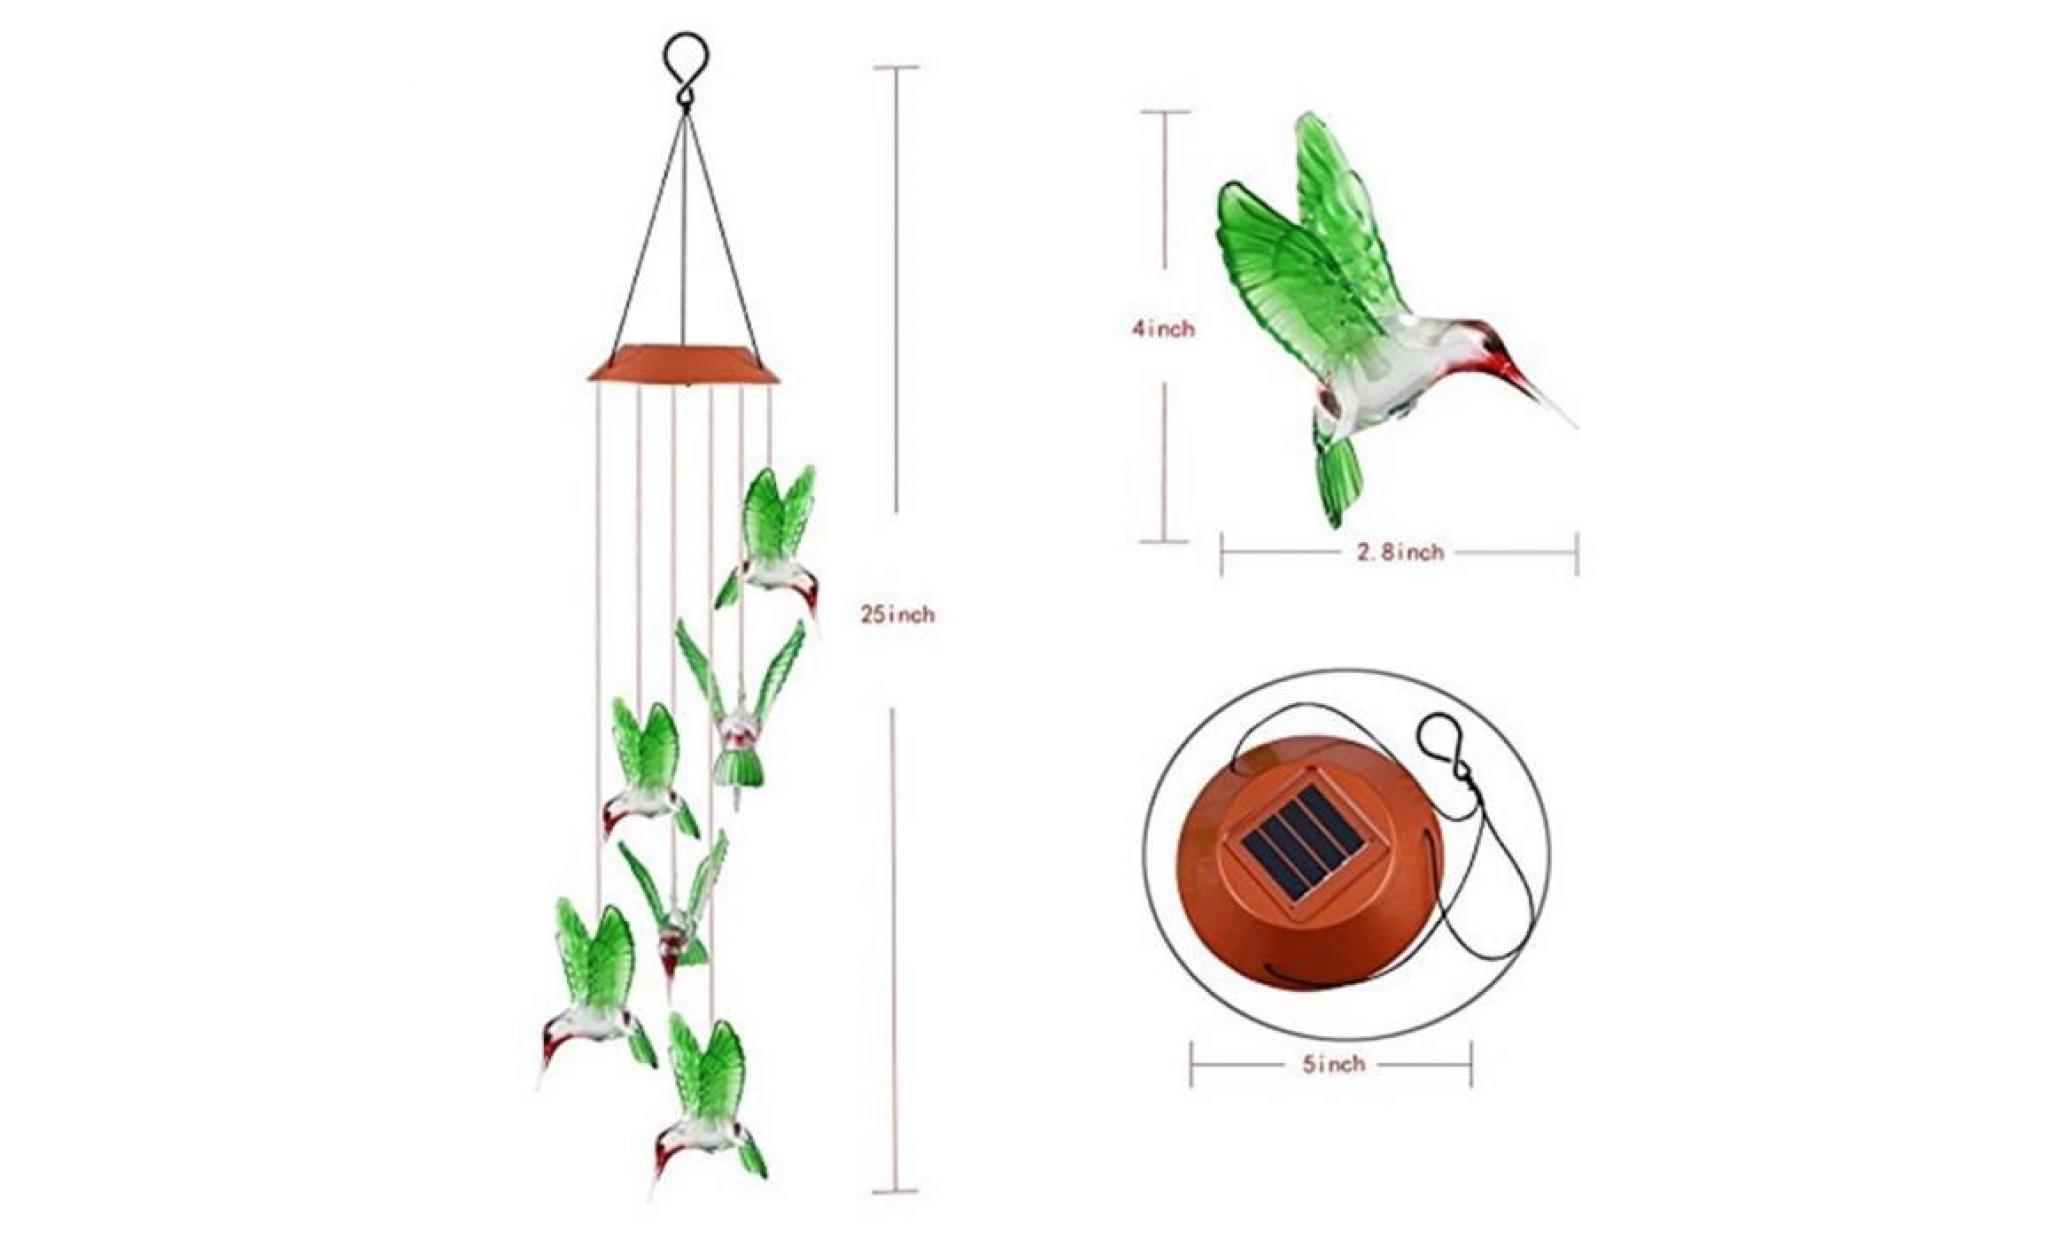 couleur changeant le vent solaire de colibri de carillon de vent de led pour l'éclairage de jardinage hjn1980 pas cher